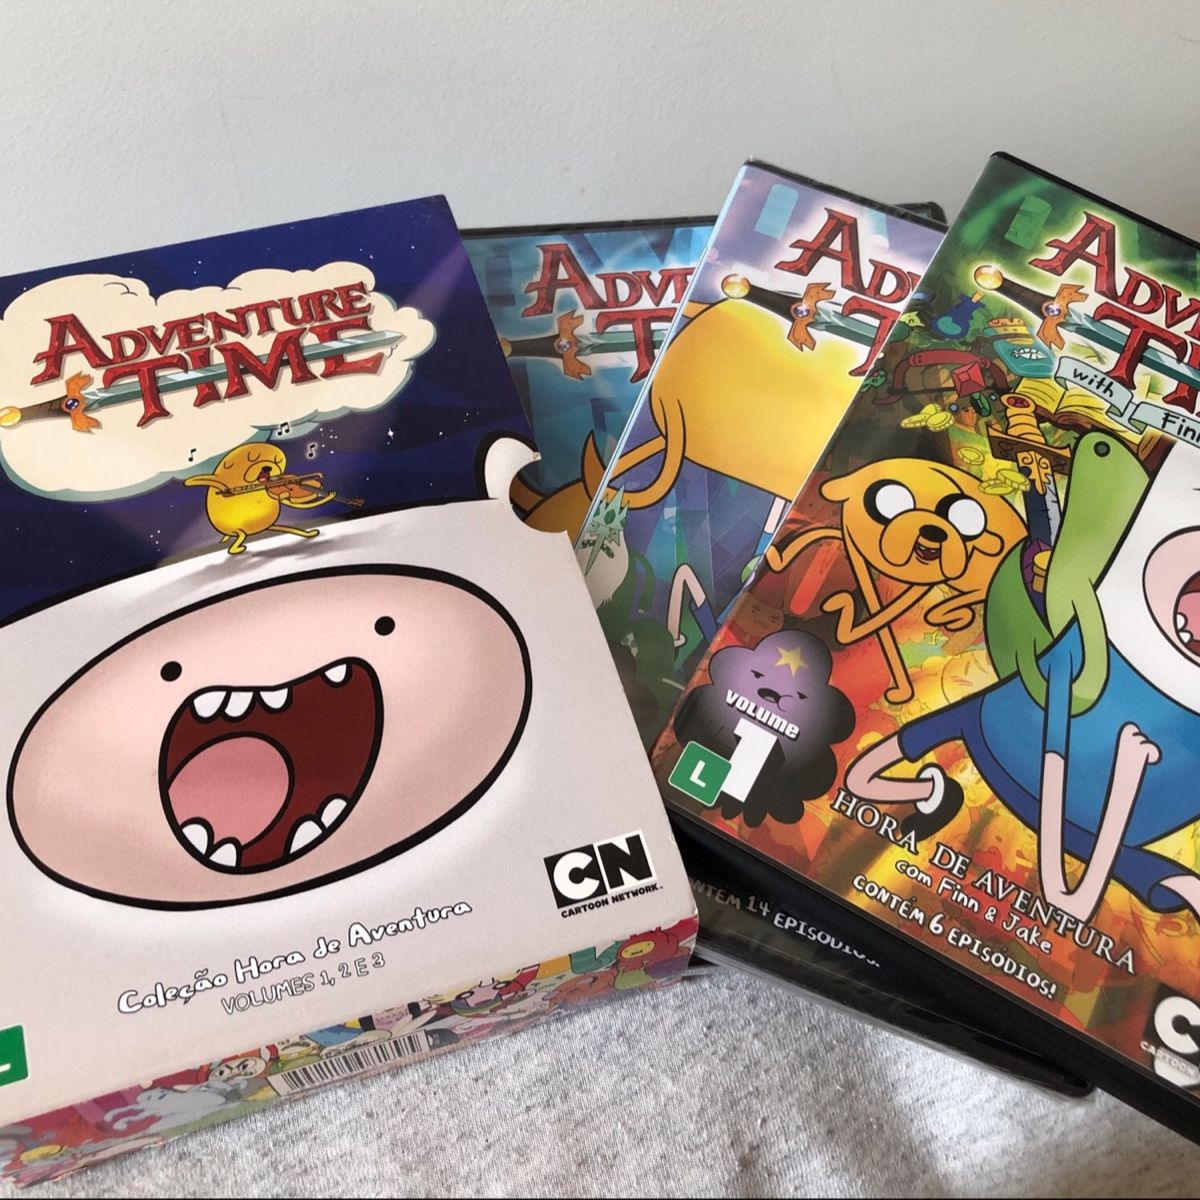 Adventure Time Hora De Aventura - Dvds Original